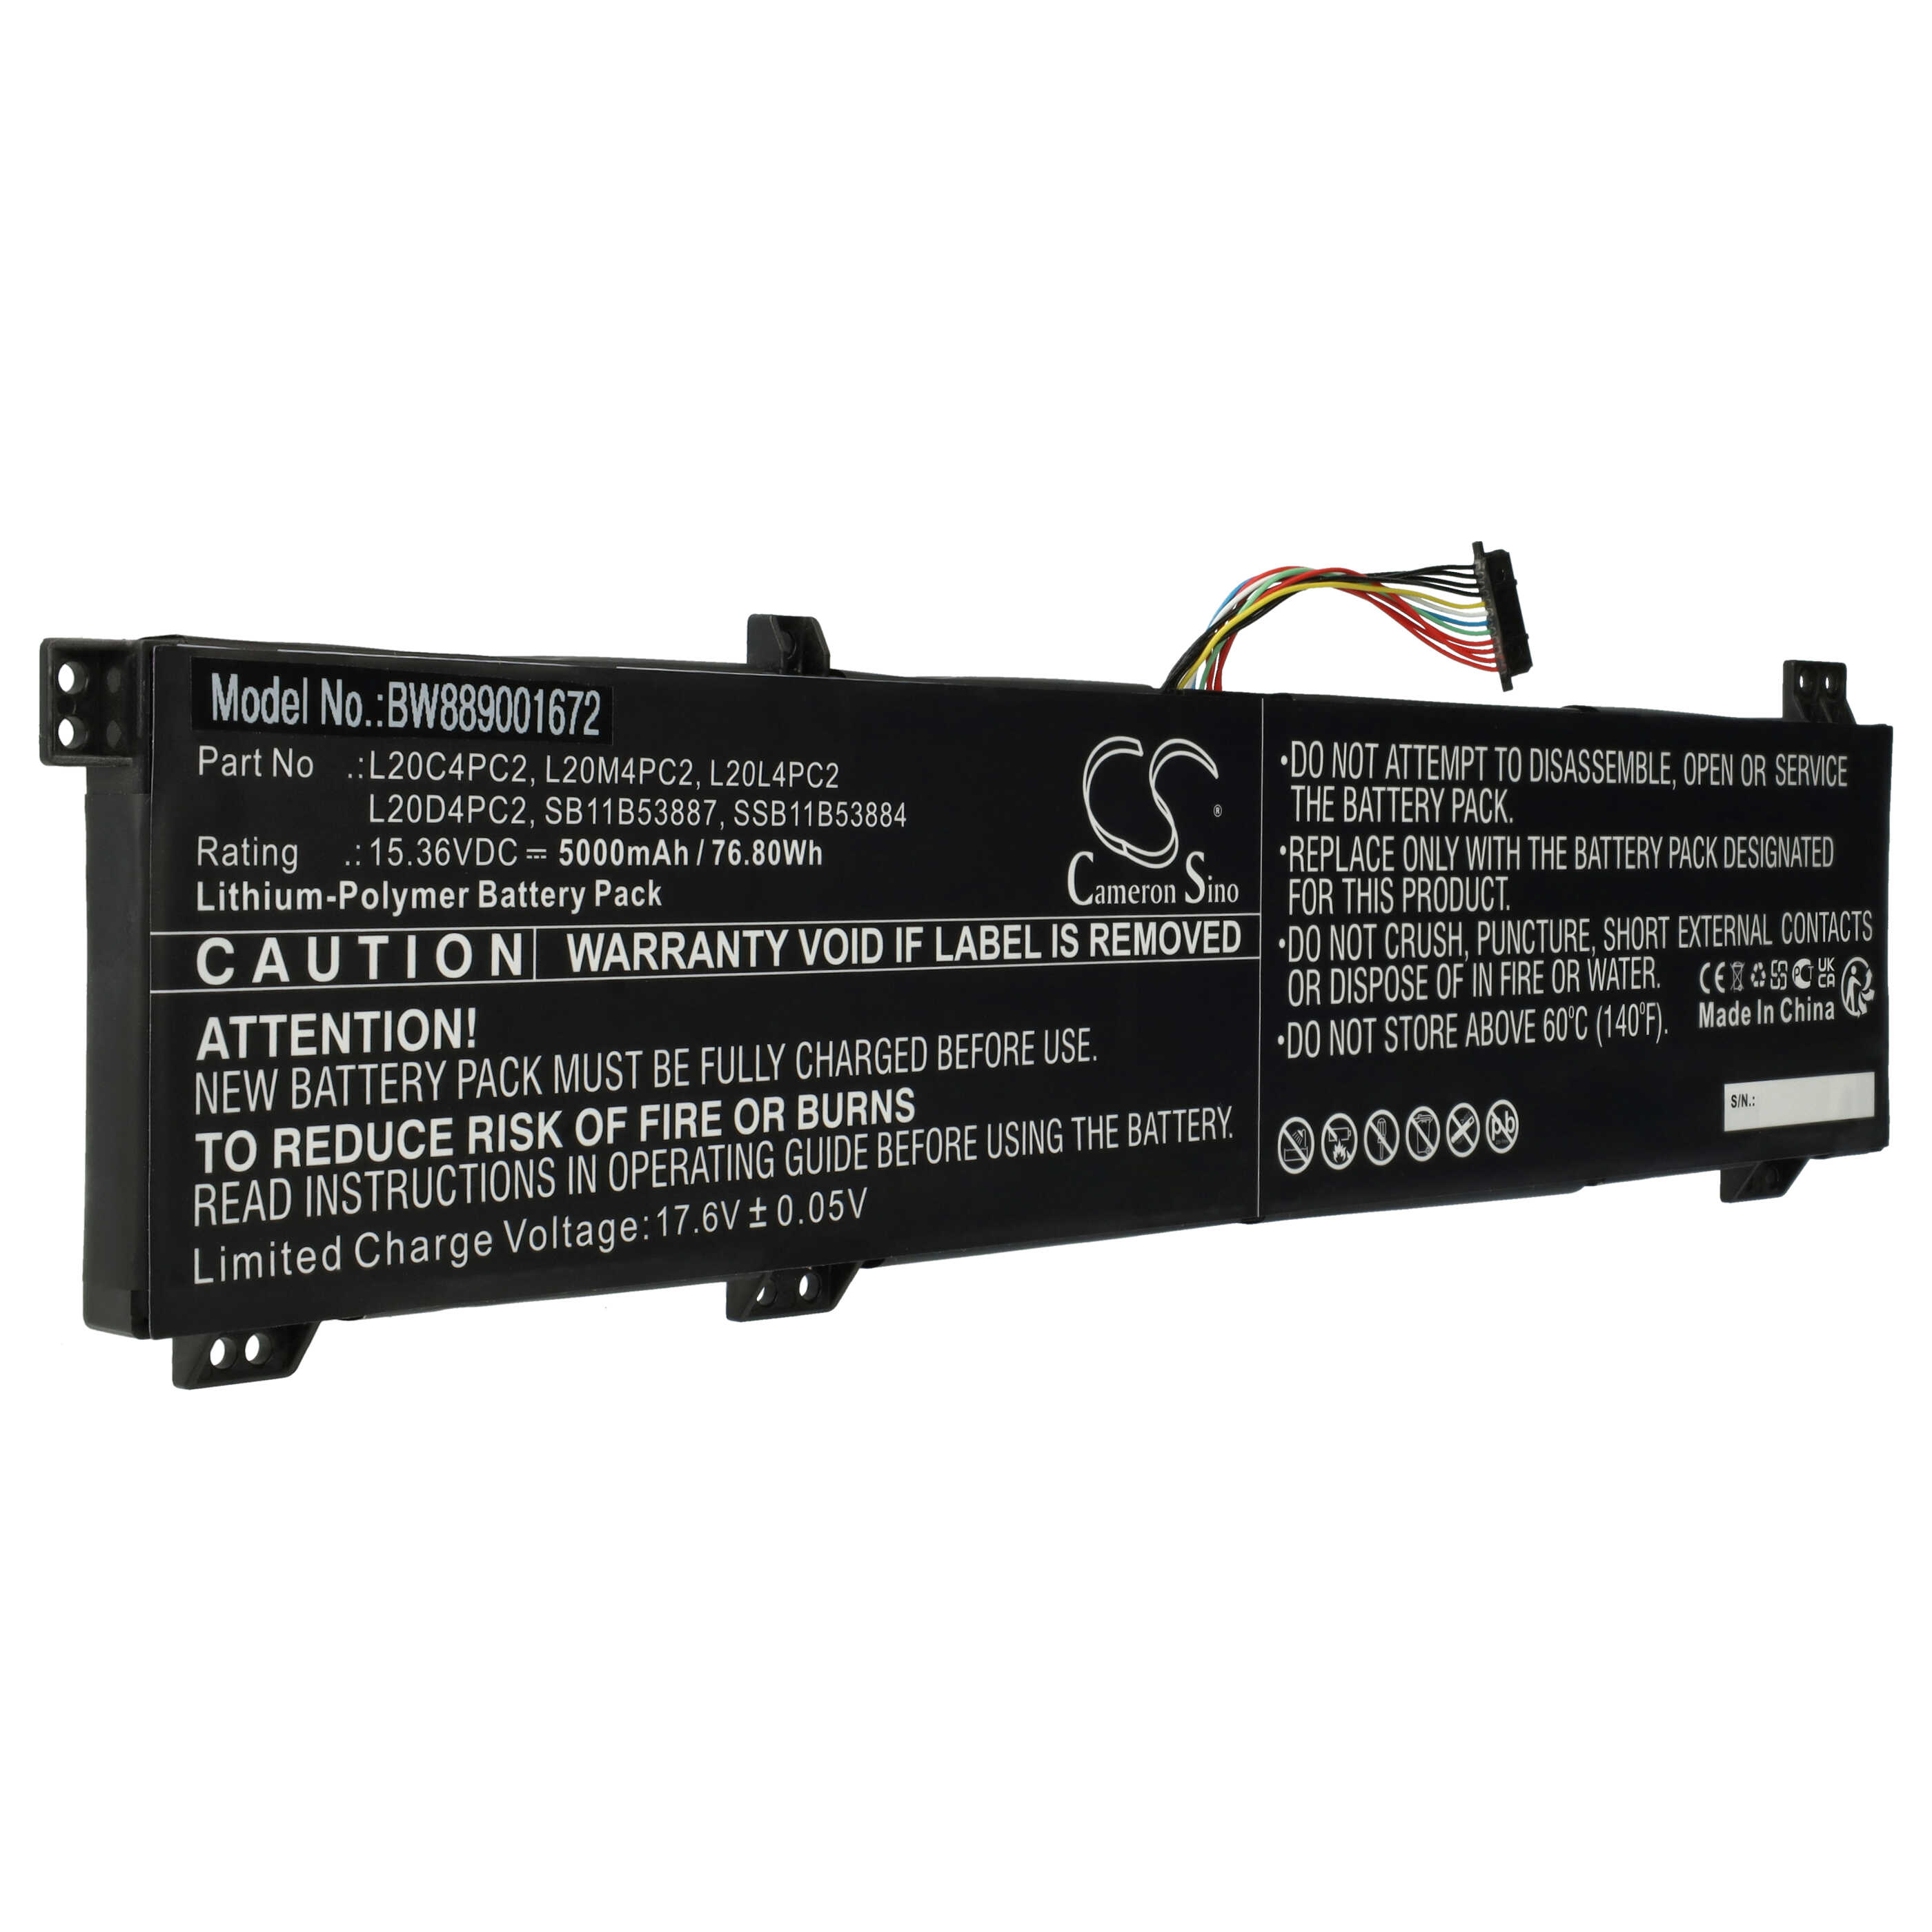 Batterie remplace Lenovo L20C4PC2, L20D4PC2, L20L4PC2 pour ordinateur portable - 5000mAh 15,36V Li-polymère